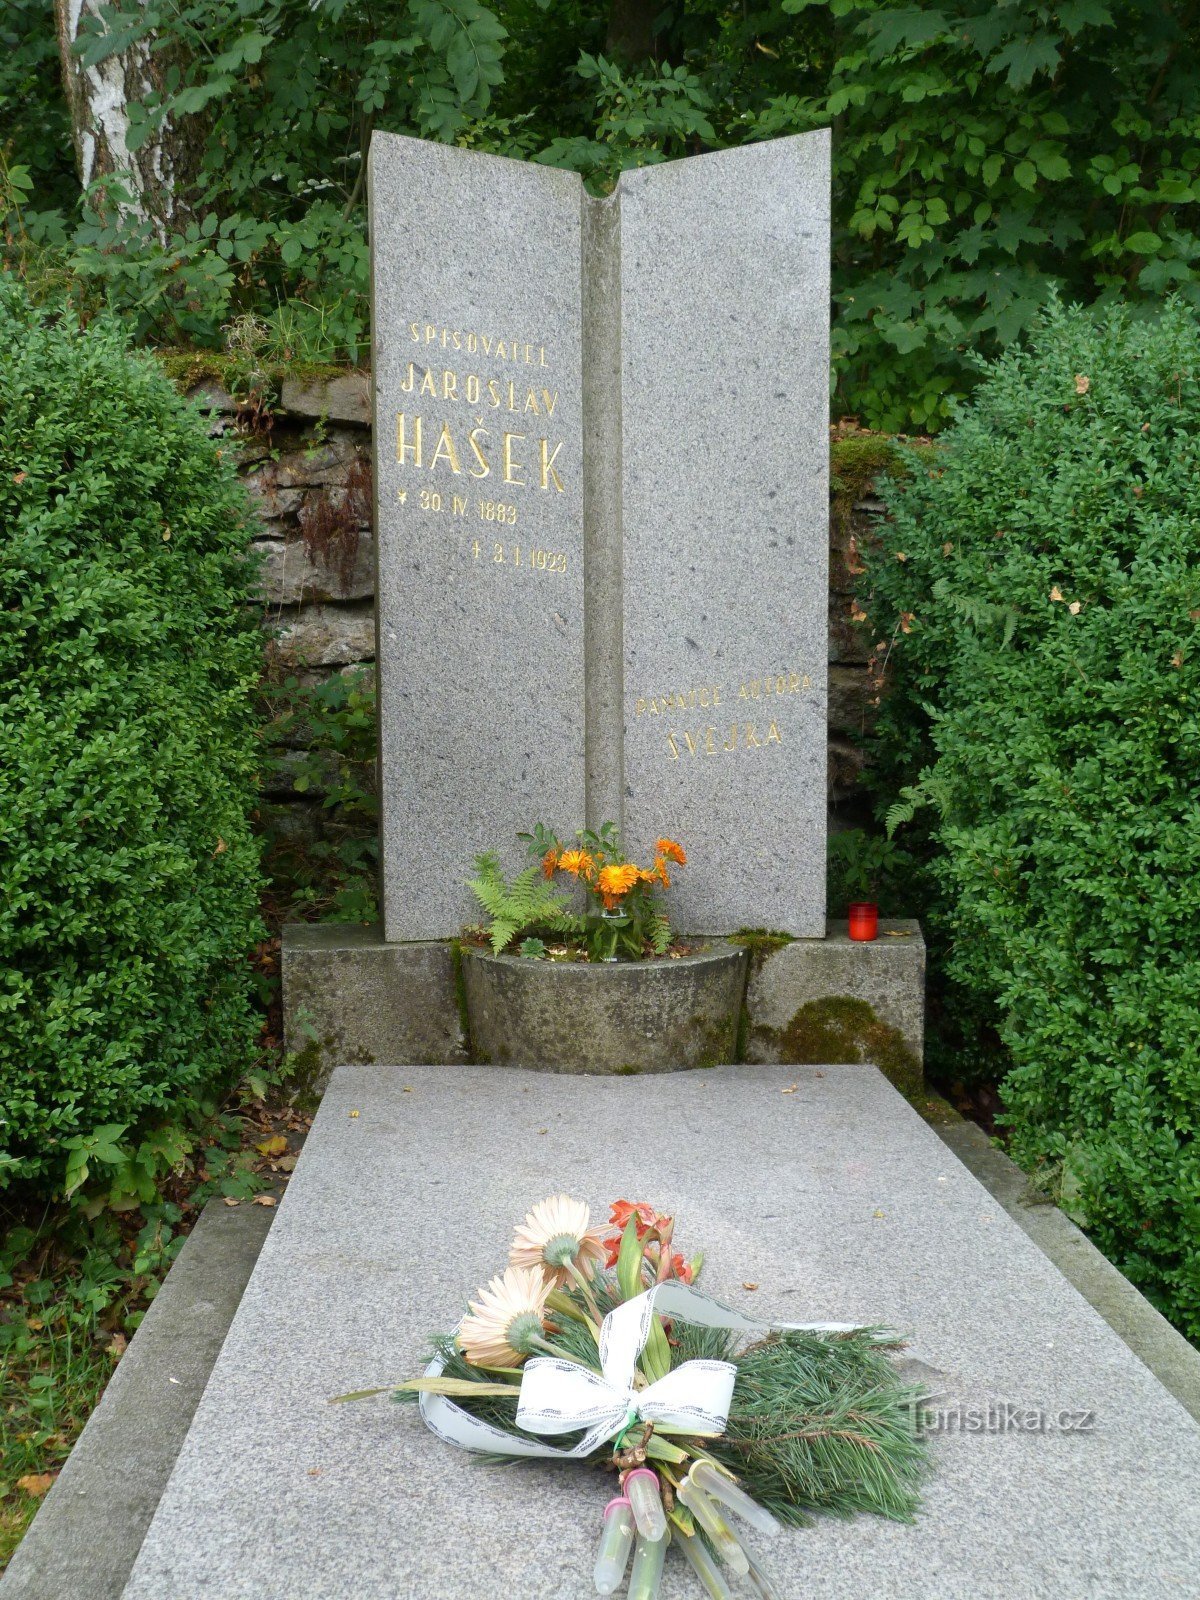 Jaroslav Hašek háza és emlékműve